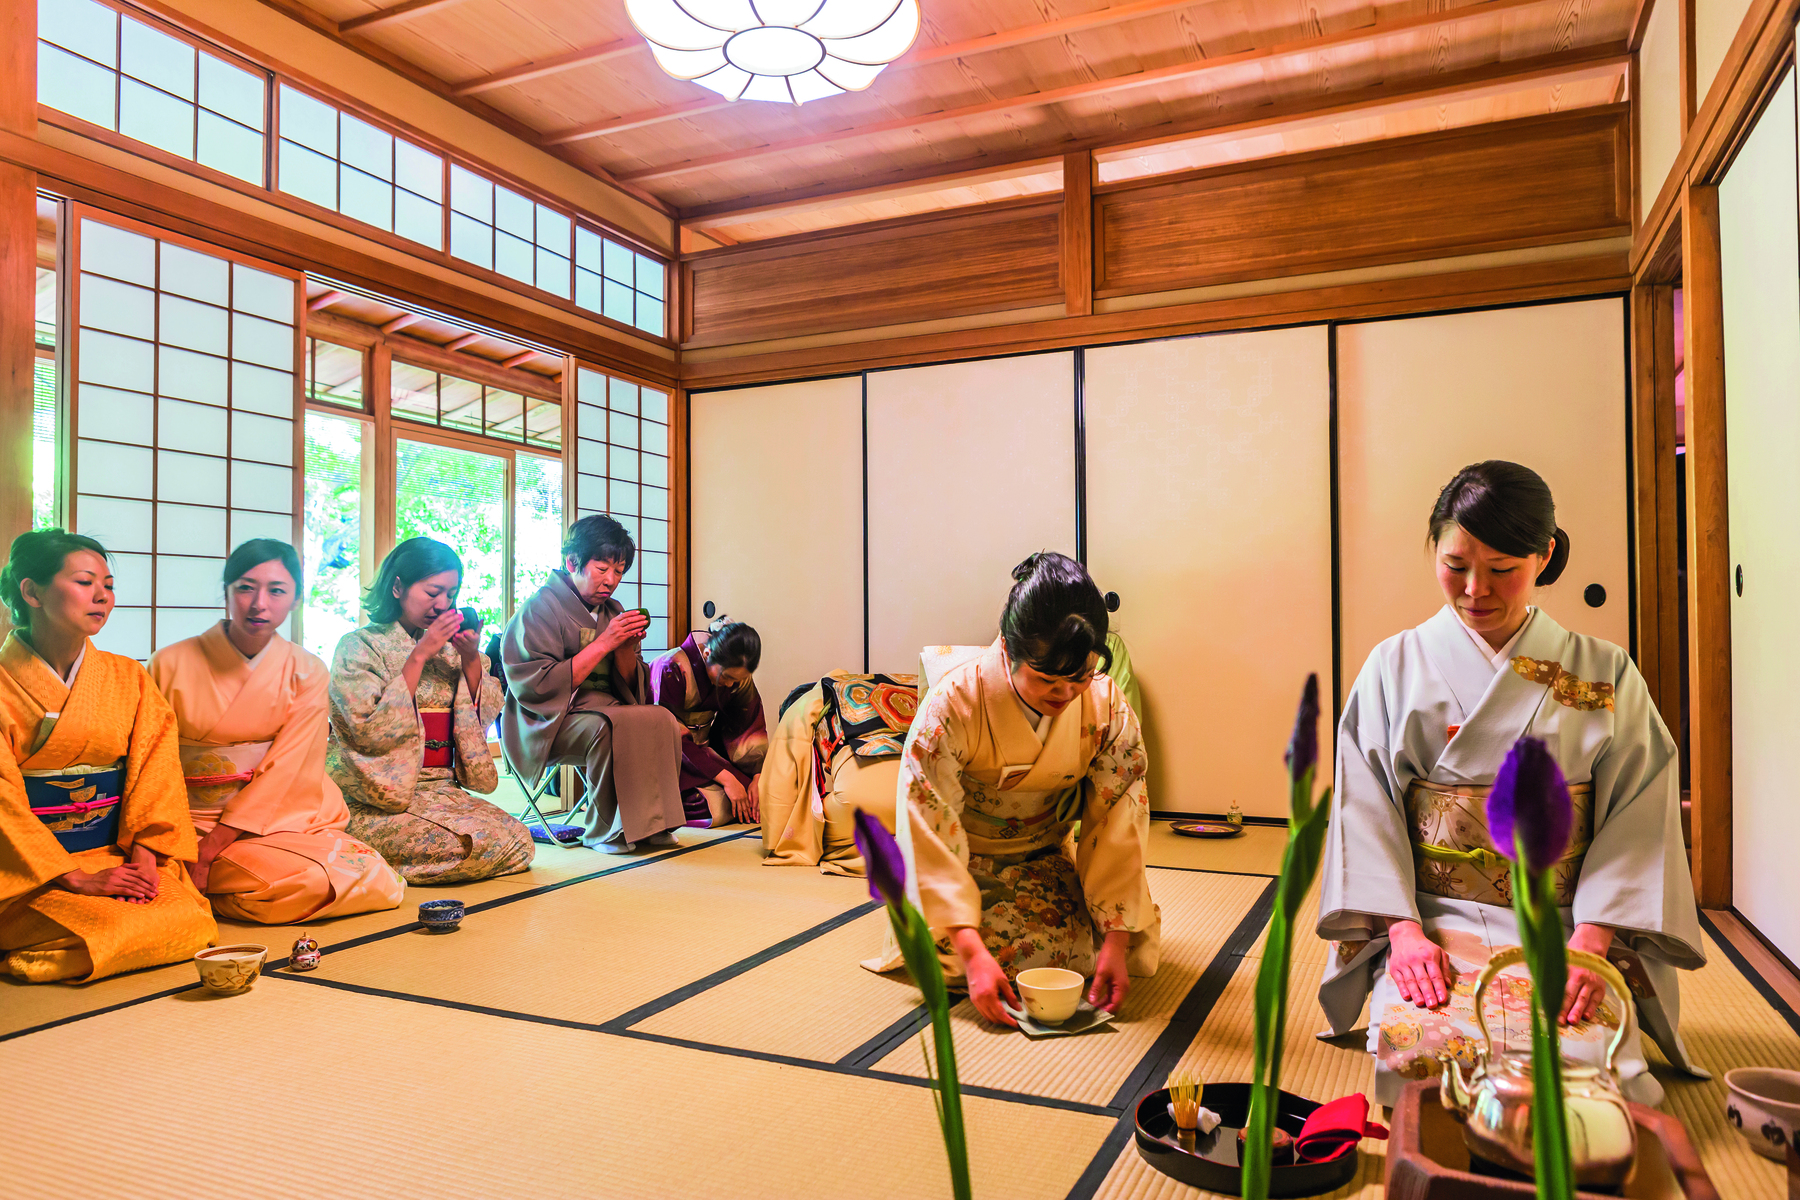 Fotografia. Cerimônia do chá em um aposento tradicional japonês, com estrutura e revestimento de madeira, com portas e janelas revestidas por papel de arroz. Duas mulheres vestindo quimono estão ajoelhadas de frente sobre uma espécie de tatame, diante de um aparato para o preparo de chá. Ao lado, próximas e uma janela, outras mulheres de quimono estão ajoelhadas lado a lado de frente para as primeiras; uma delas está sentada em uma cadeira.